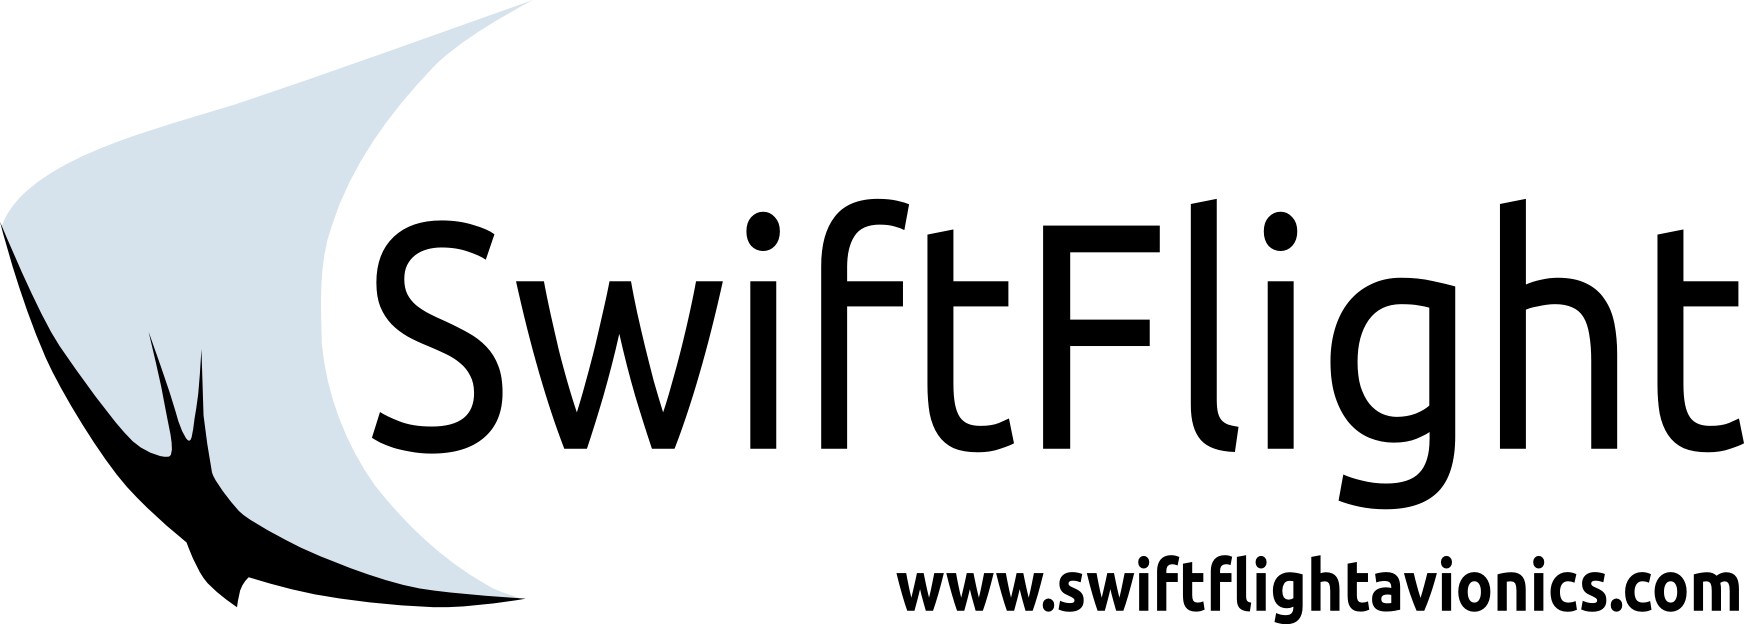 SwiftFlight_Shop